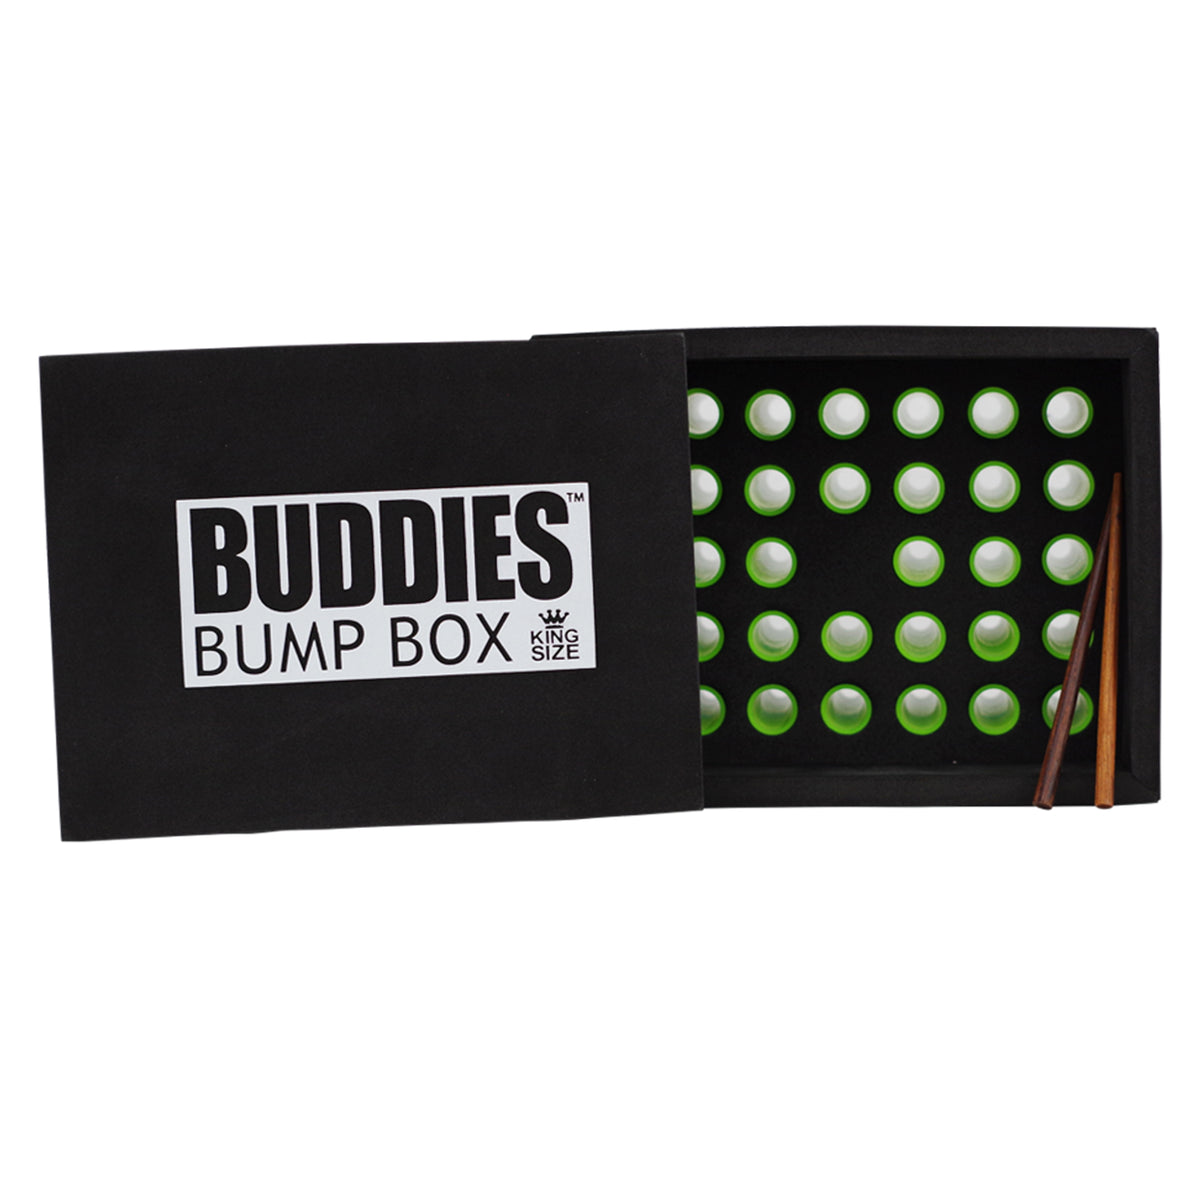 Buddies Bump Box King 109mm - Supply Natural